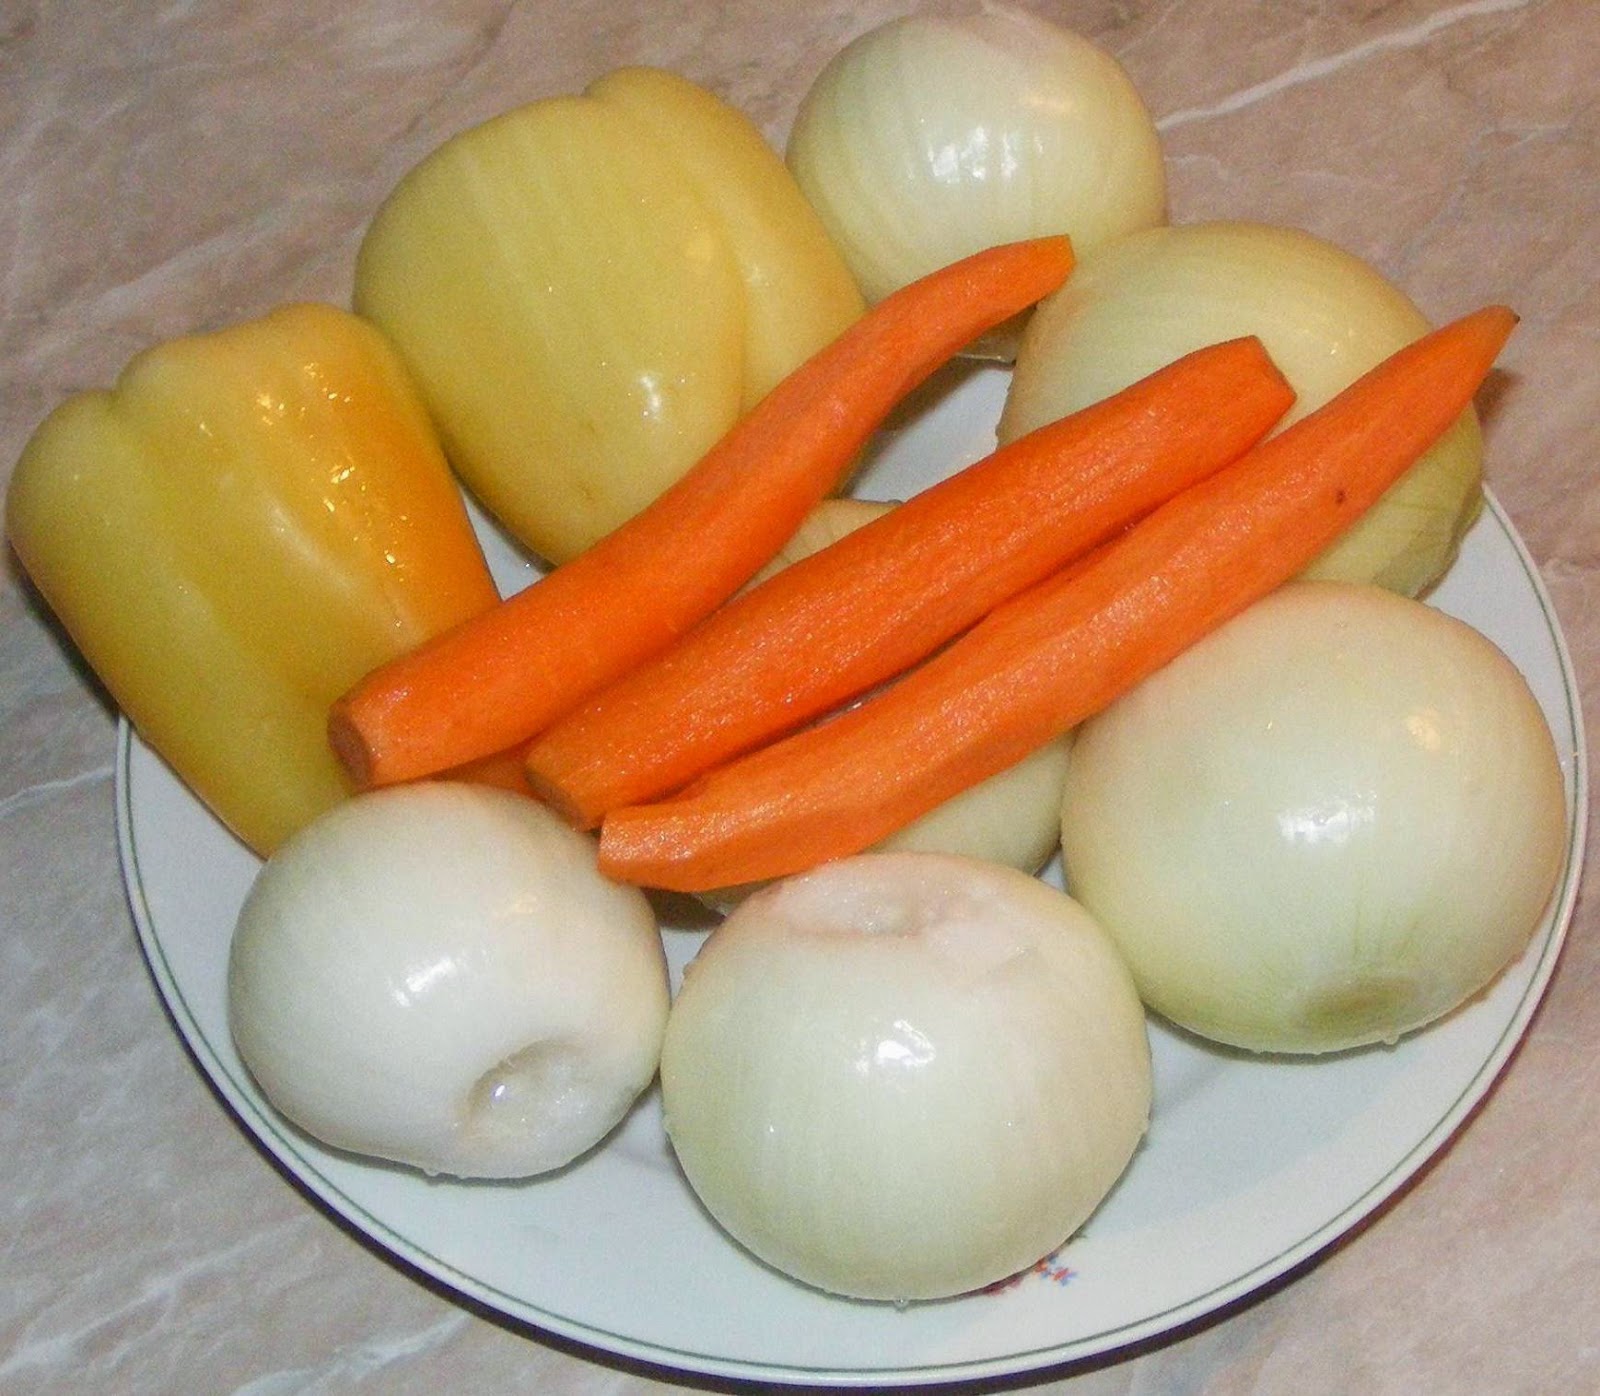 legume, legume proaspete pentru mancare, legume proaspete, retete cu legume, ceapa, morcovi, ardei, retete si preparate culinare cu legume, legume pentru gatit, 